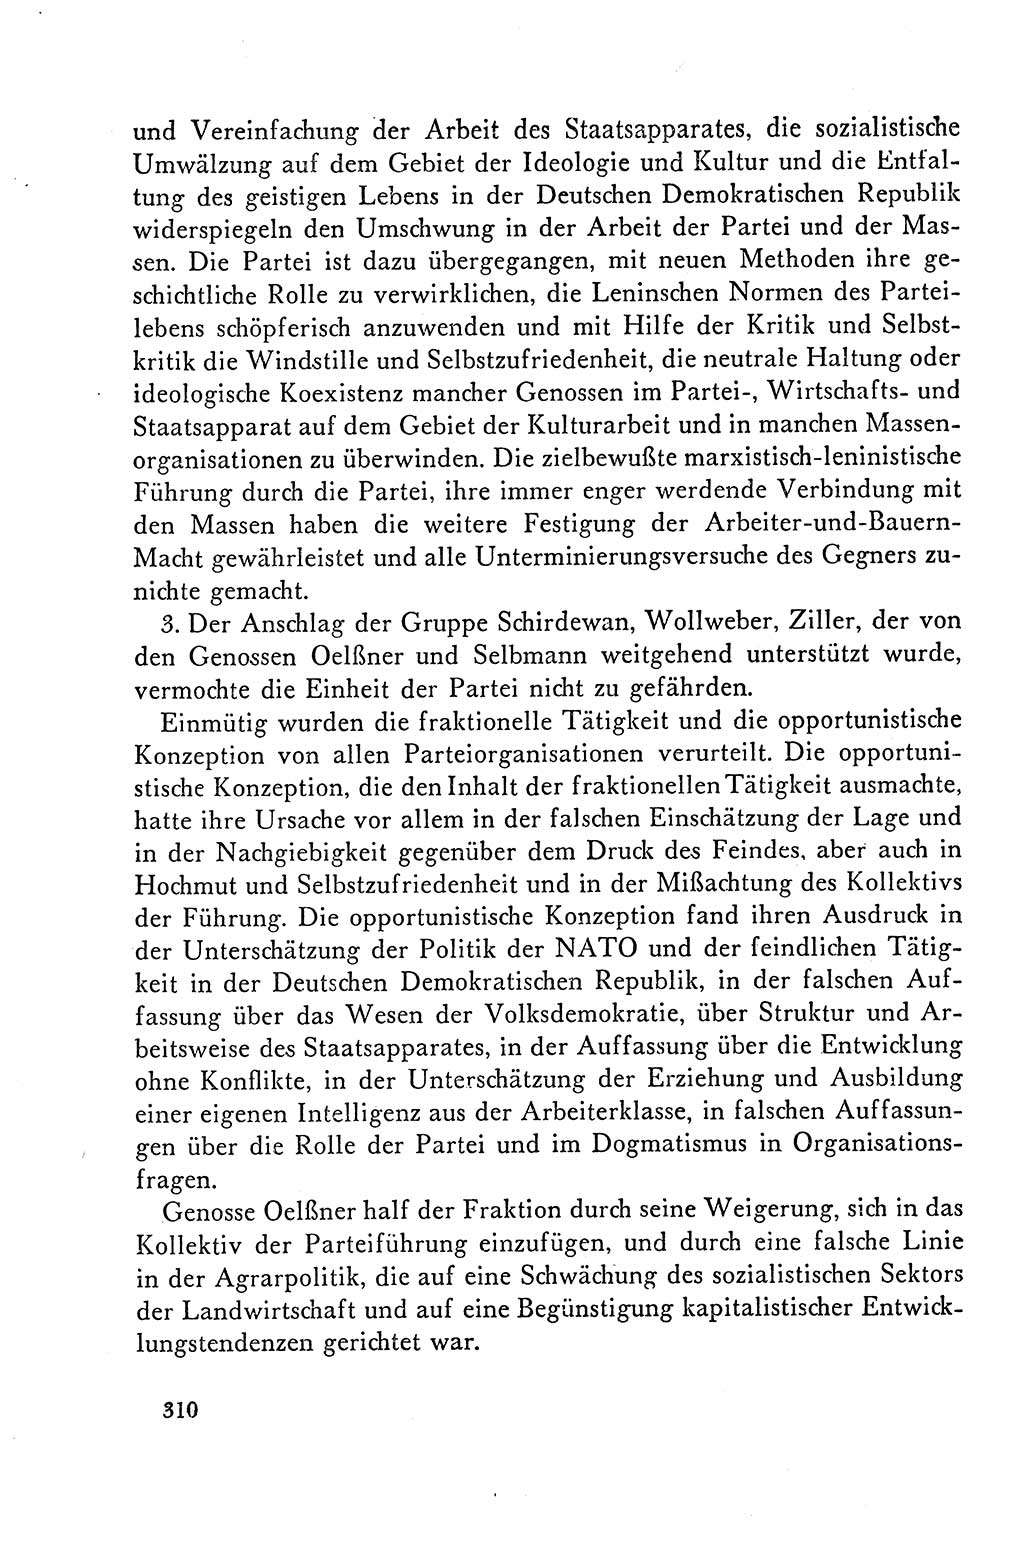 Dokumente der Sozialistischen Einheitspartei Deutschlands (SED) [Deutsche Demokratische Republik (DDR)] 1958-1959, Seite 310 (Dok. SED DDR 1958-1959, S. 310)